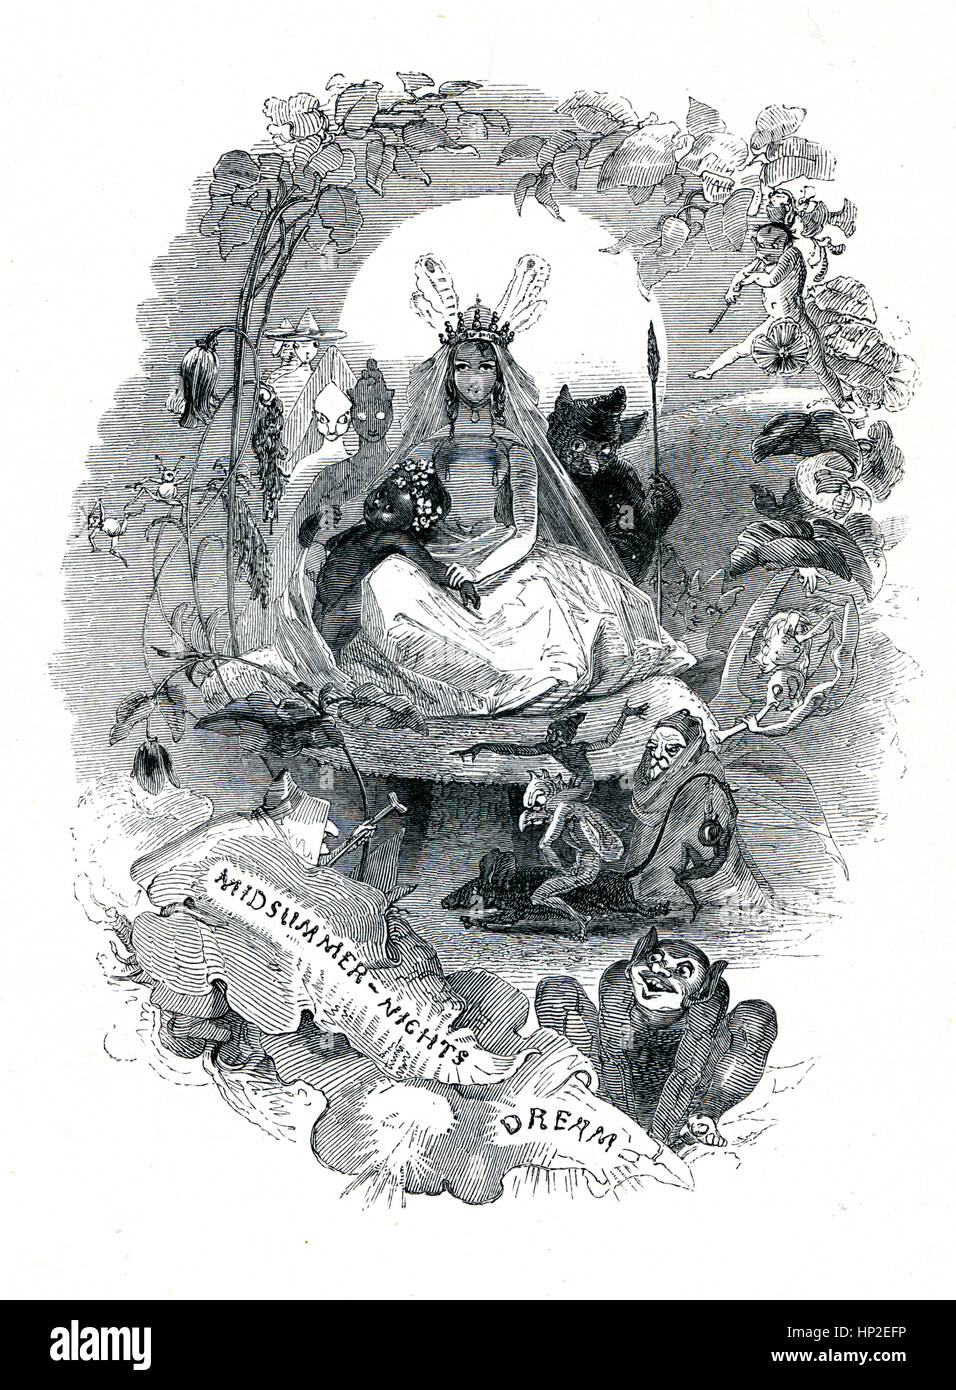 Midsummer Nights Traum, viktorianischen Buch Frontispiz für das Theaterstück von William Shakespeare aus dem 1849 illustrierte Buch Heldinnen von Shakespeare Stockfoto